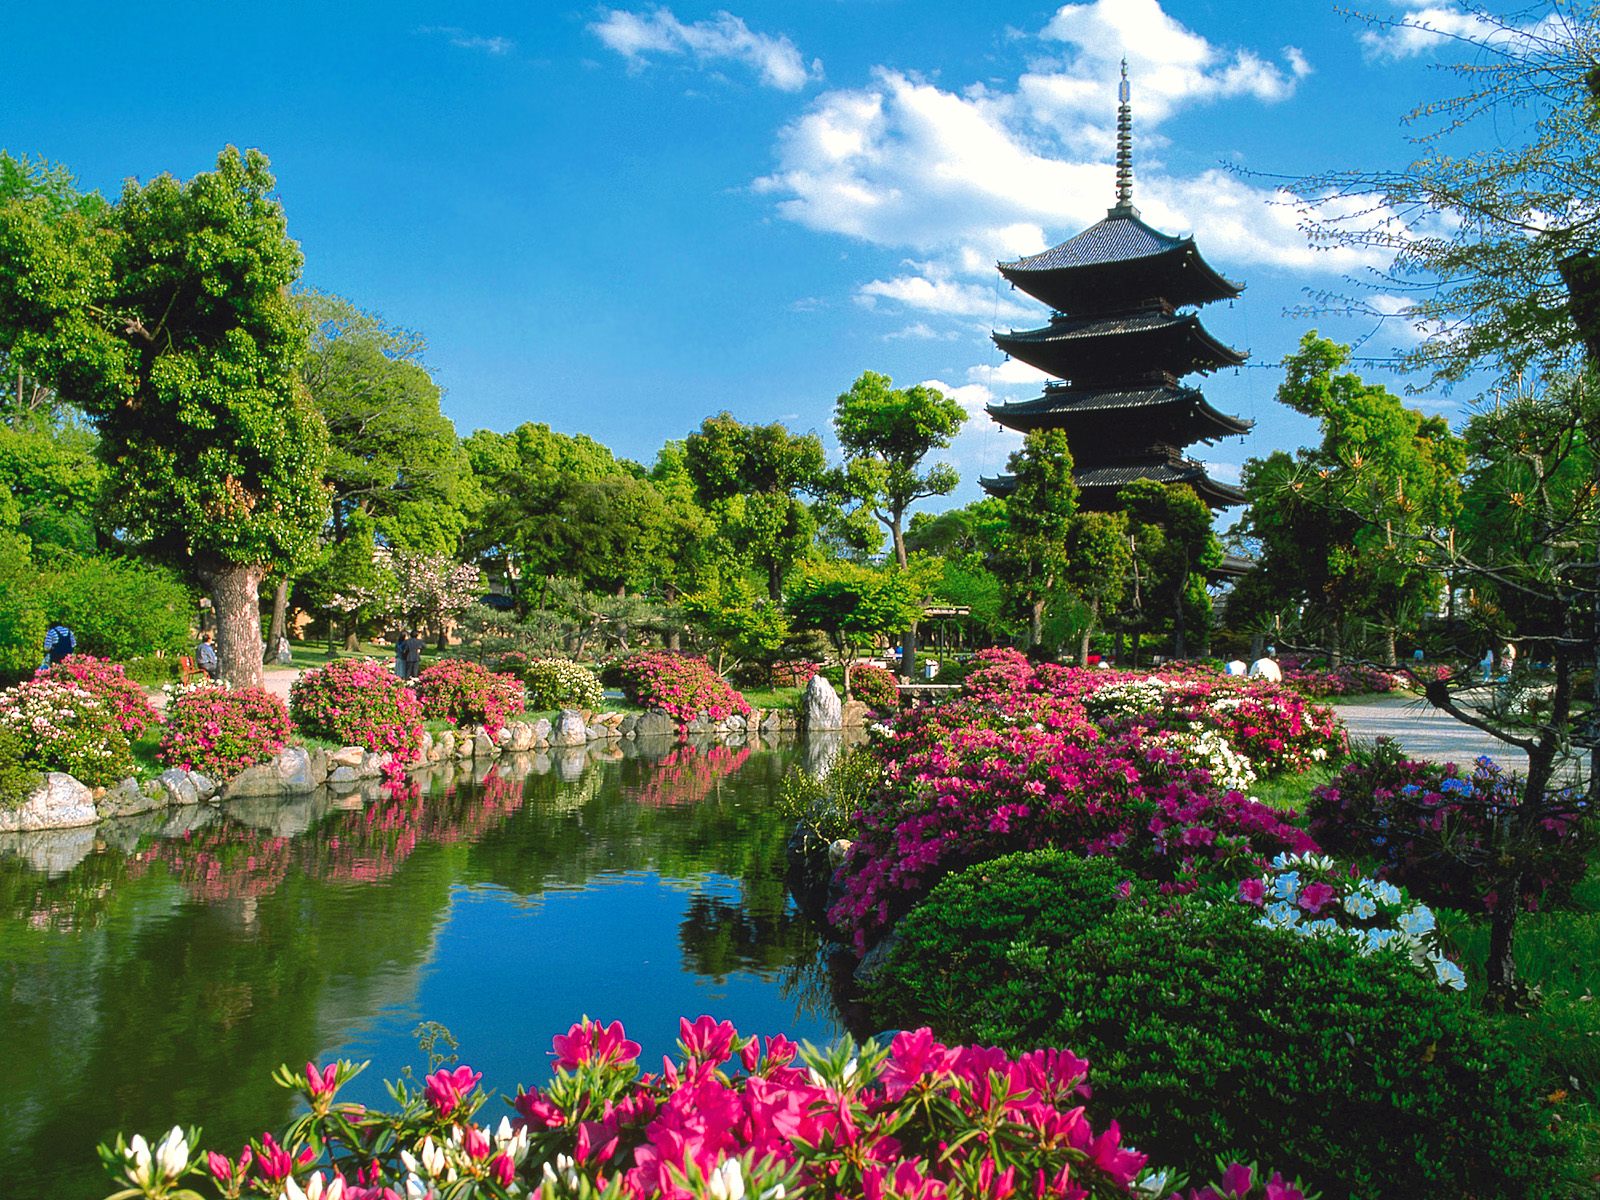 Característica de Kyoto es la belleza de sus constrtucciones  y jardines